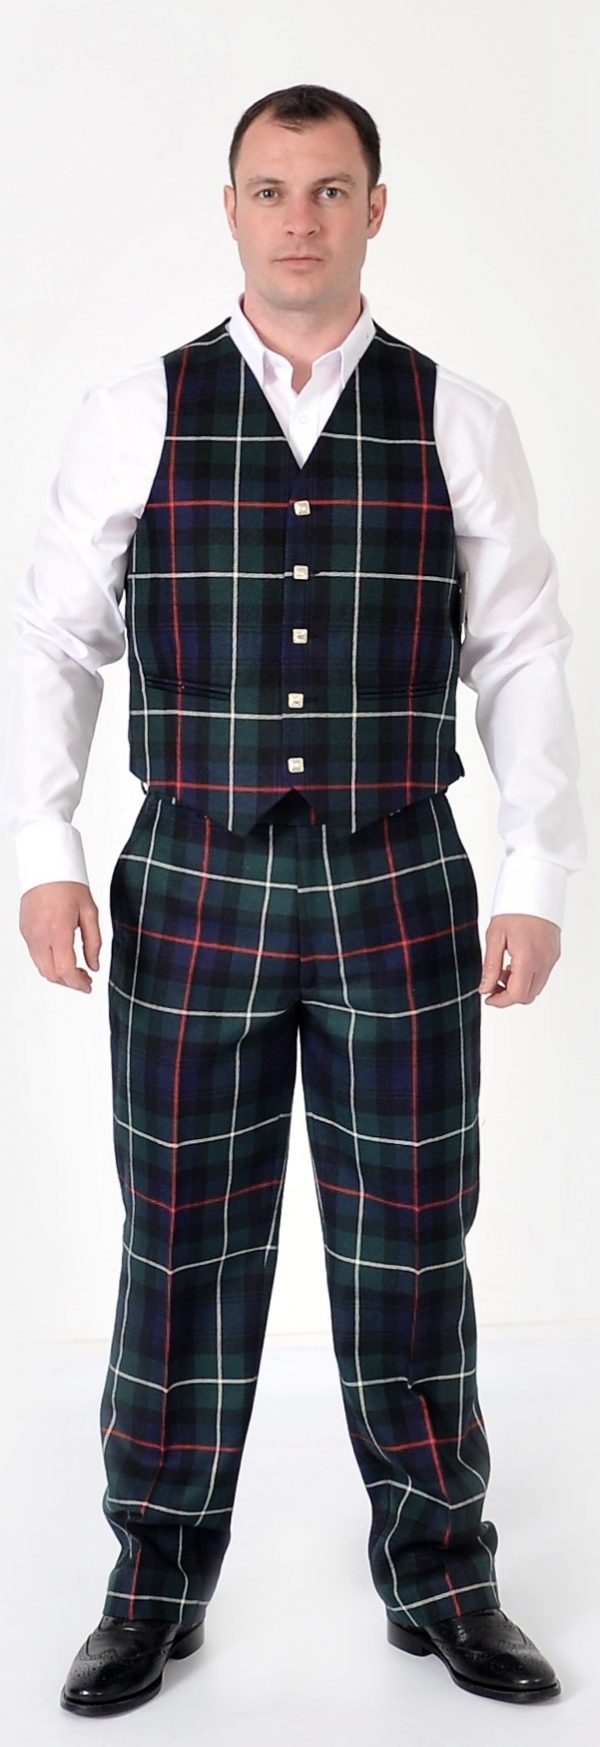 Mackenzie Modern Scottish Made Tartan Trousers